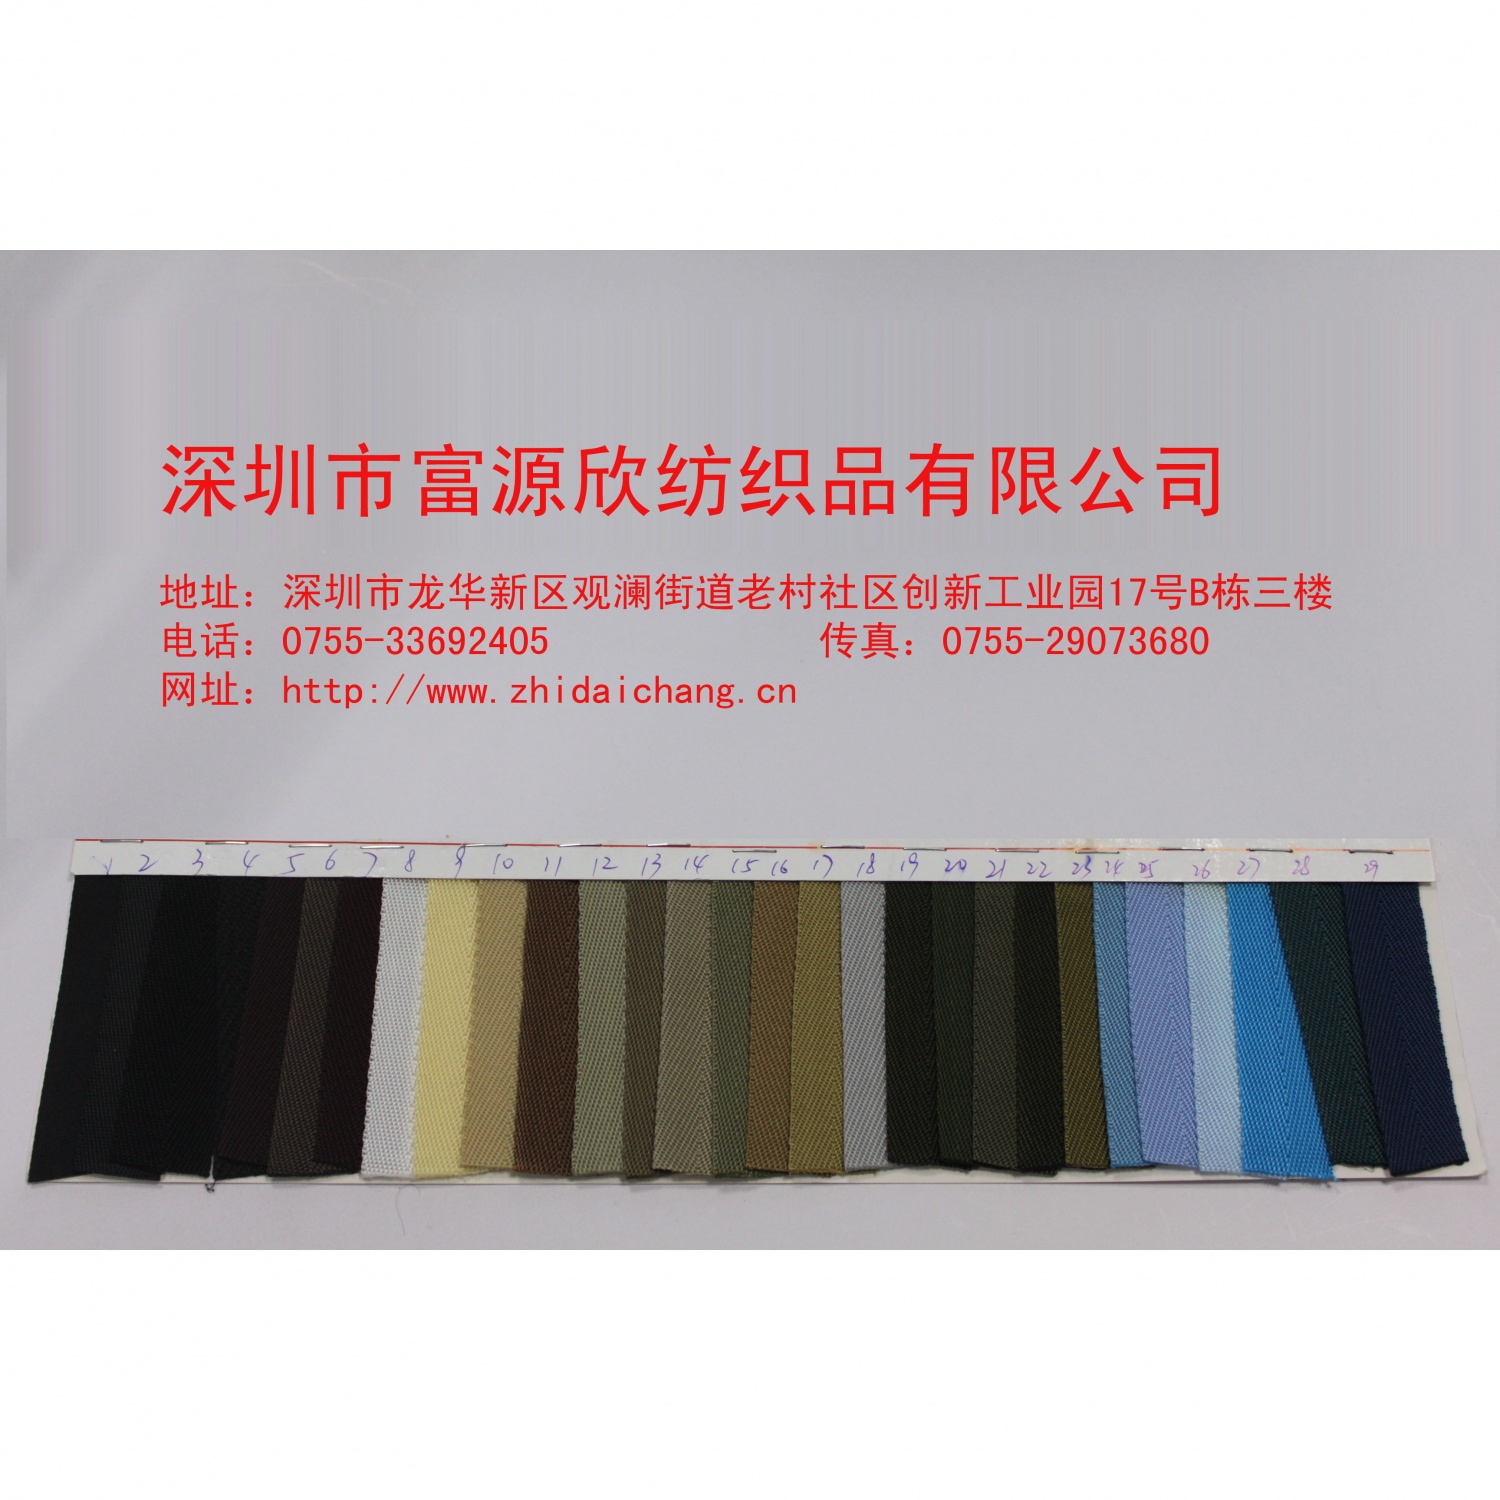 广东织带厂|批发供应涤纶人纹织带|安全带|宠物带|箱包带